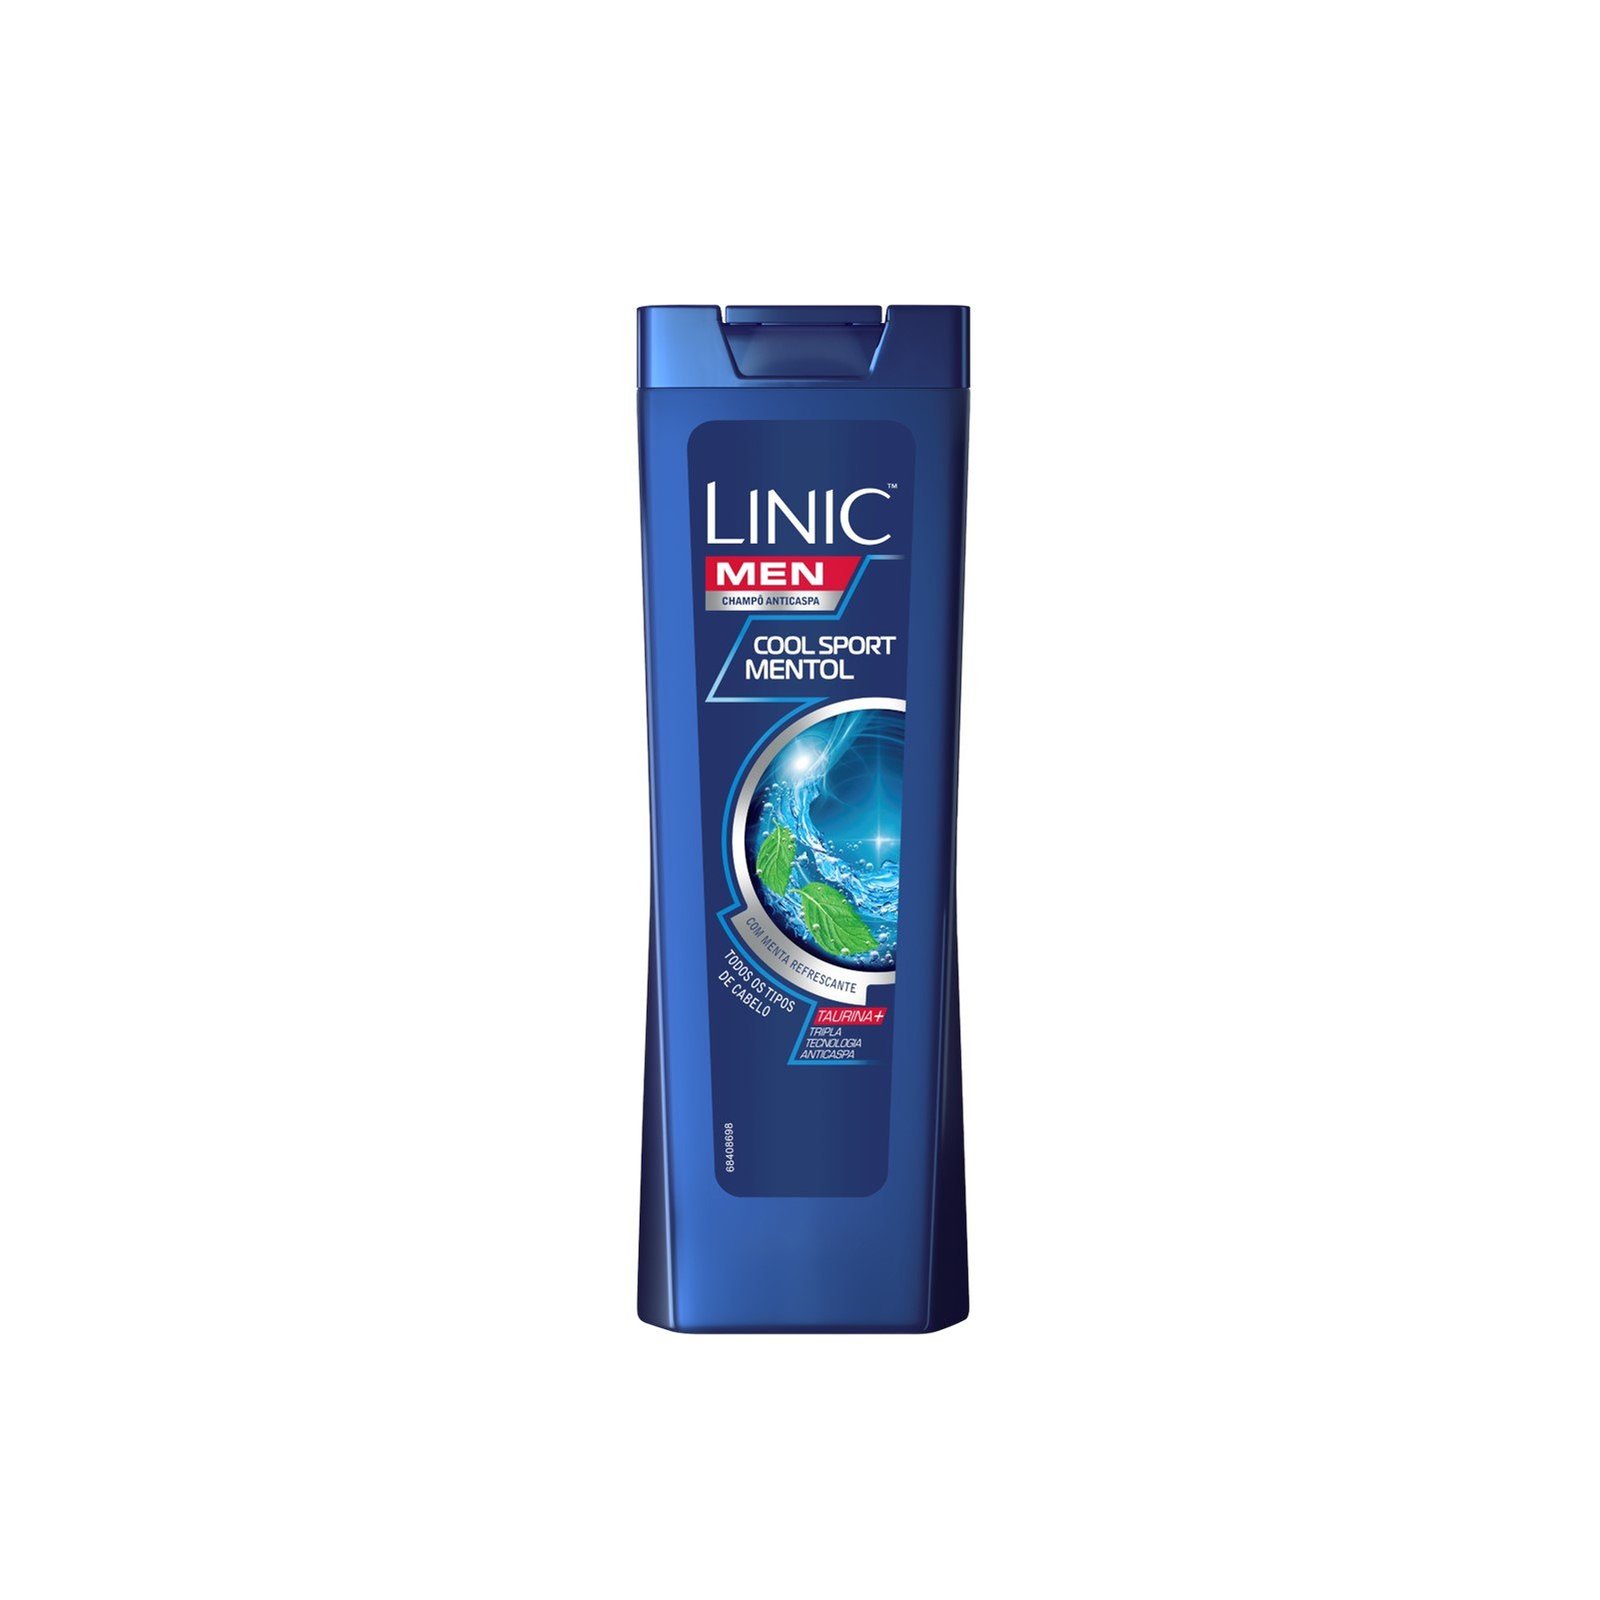 Linic Men Anti-Dandruff Cool Sport Mint Shampoo 225ml